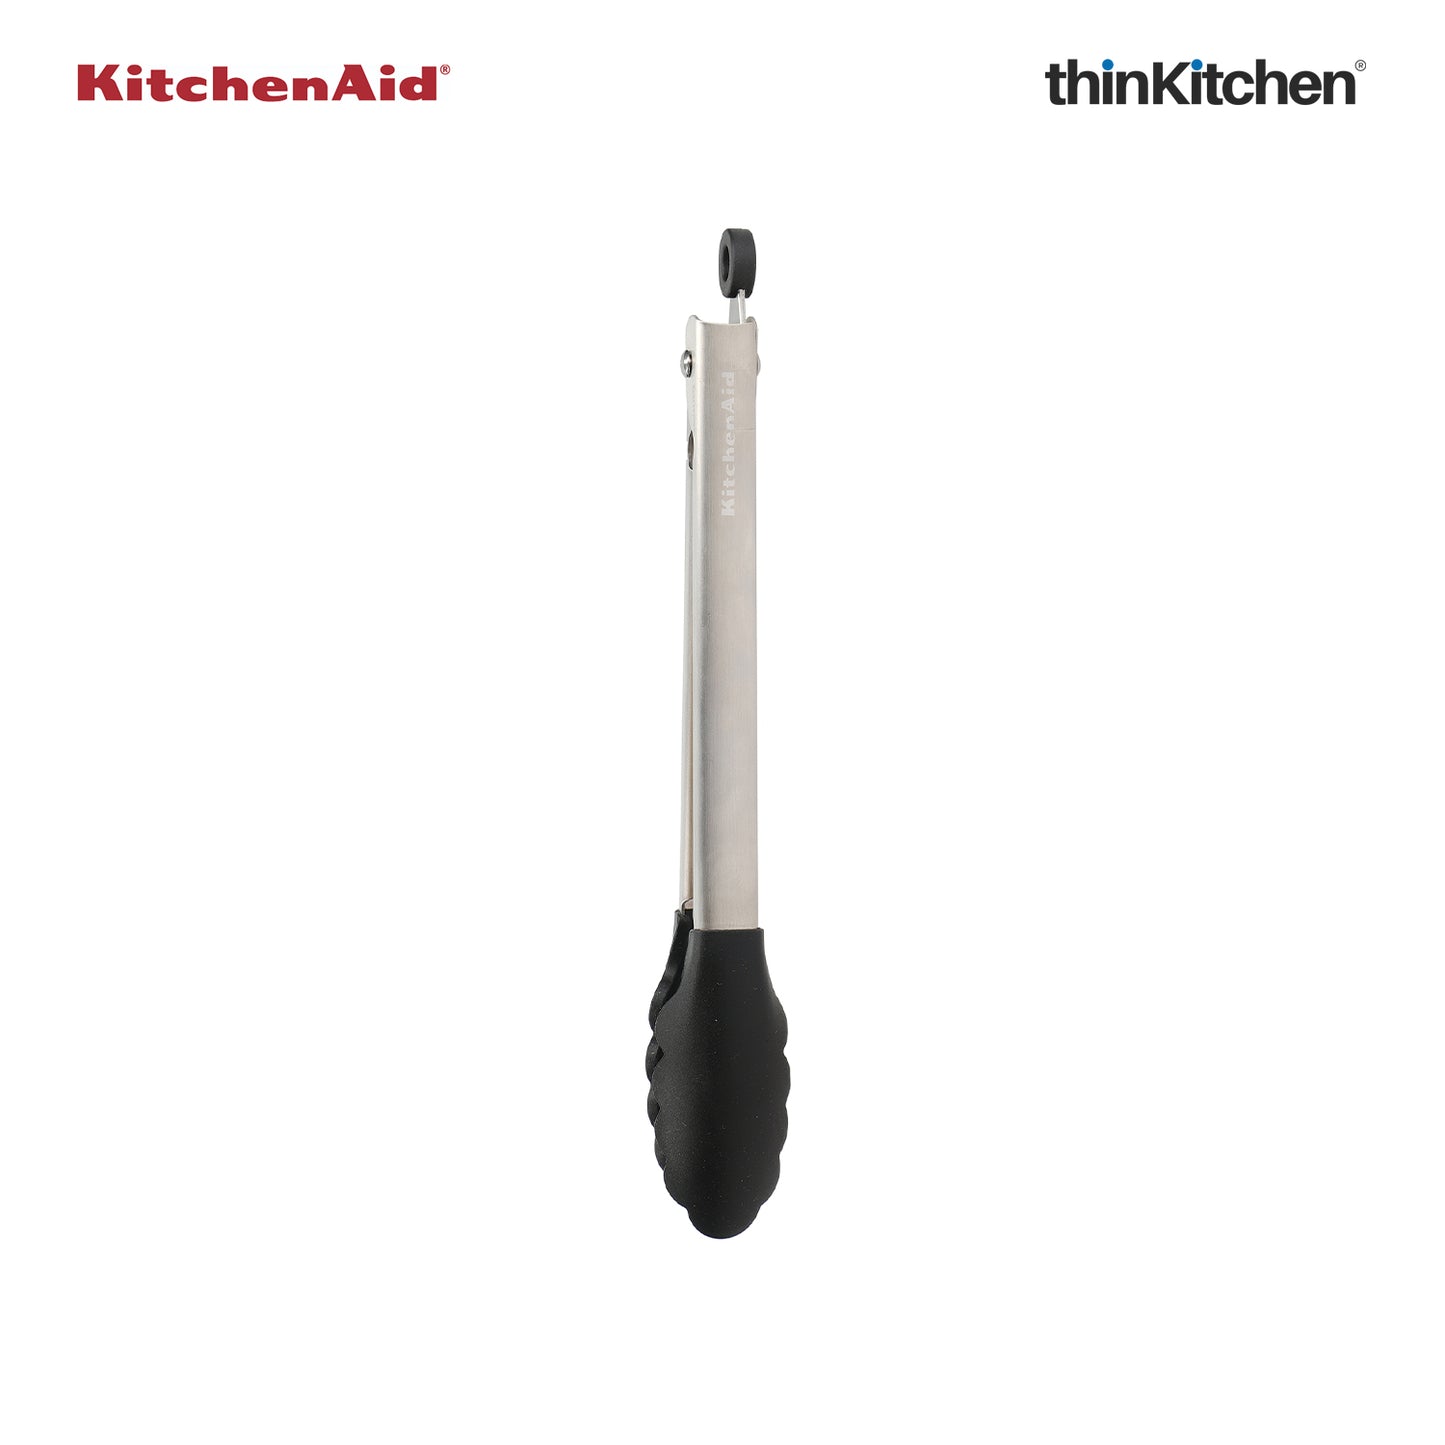 Kitchenaid Kitchen Silicone Tipped Black Tongs